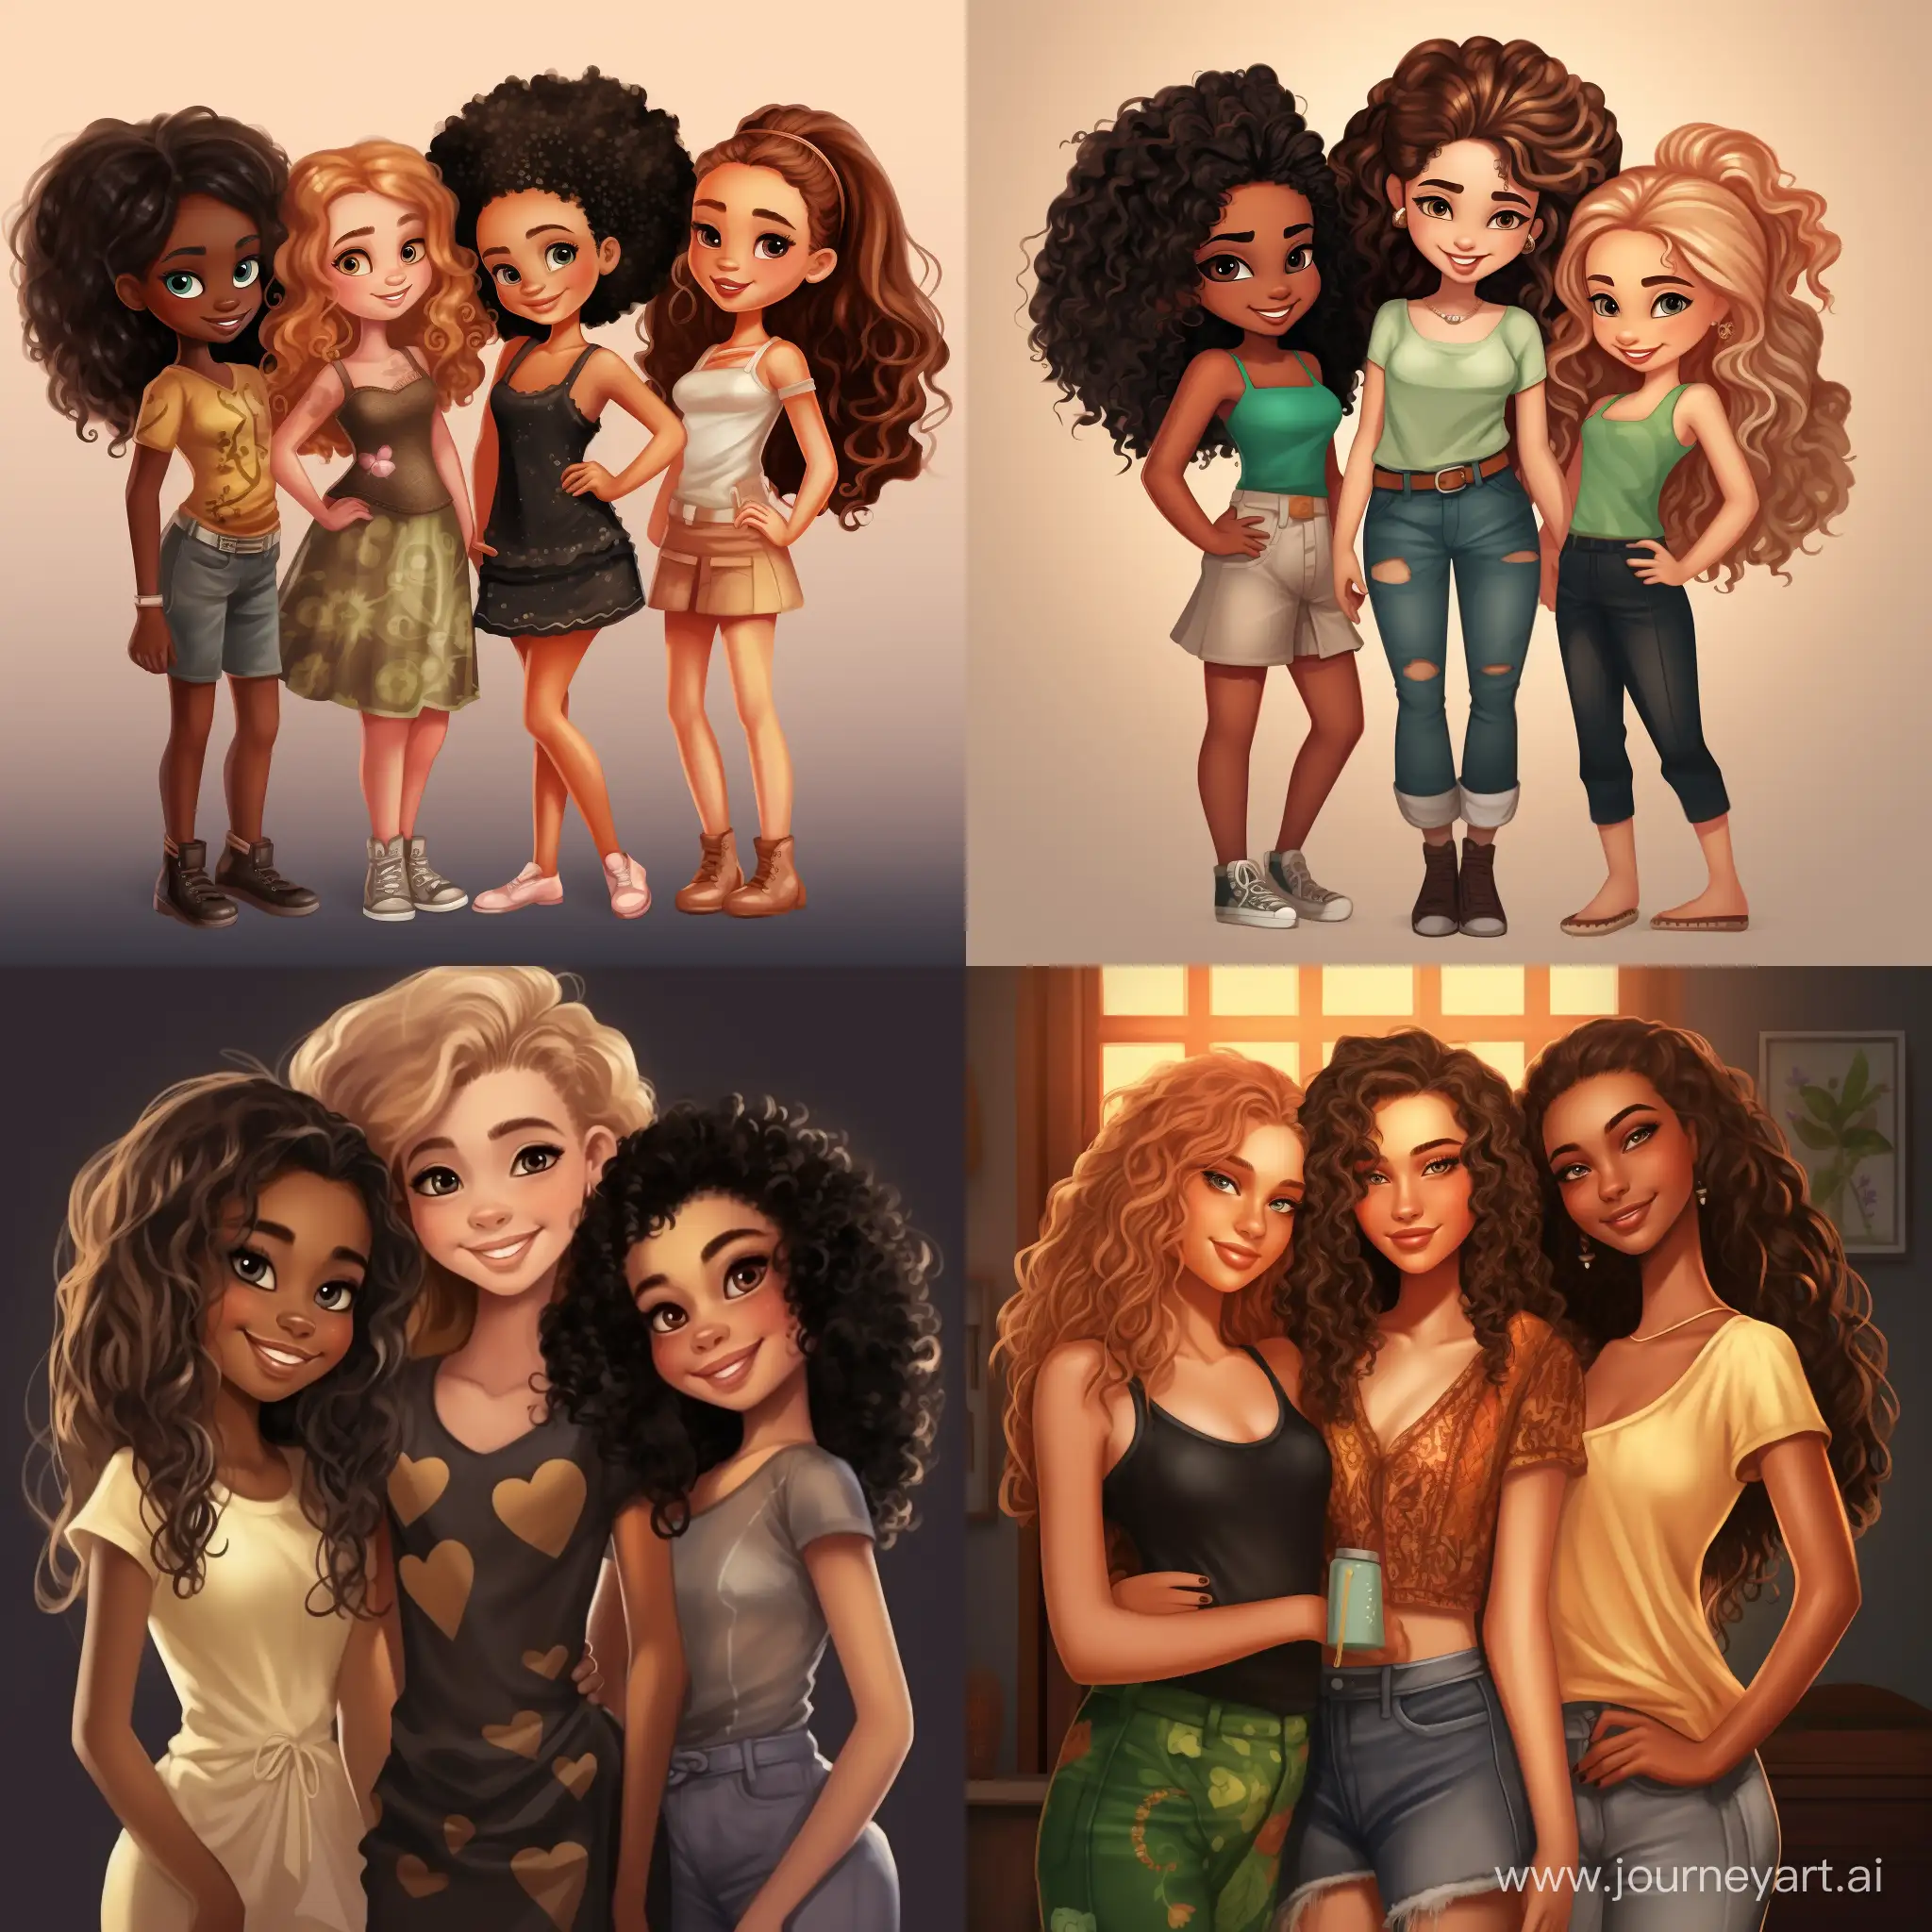 Closeknit-Friendship-Four-Girls-in-High-Detail-Cartoon-Art